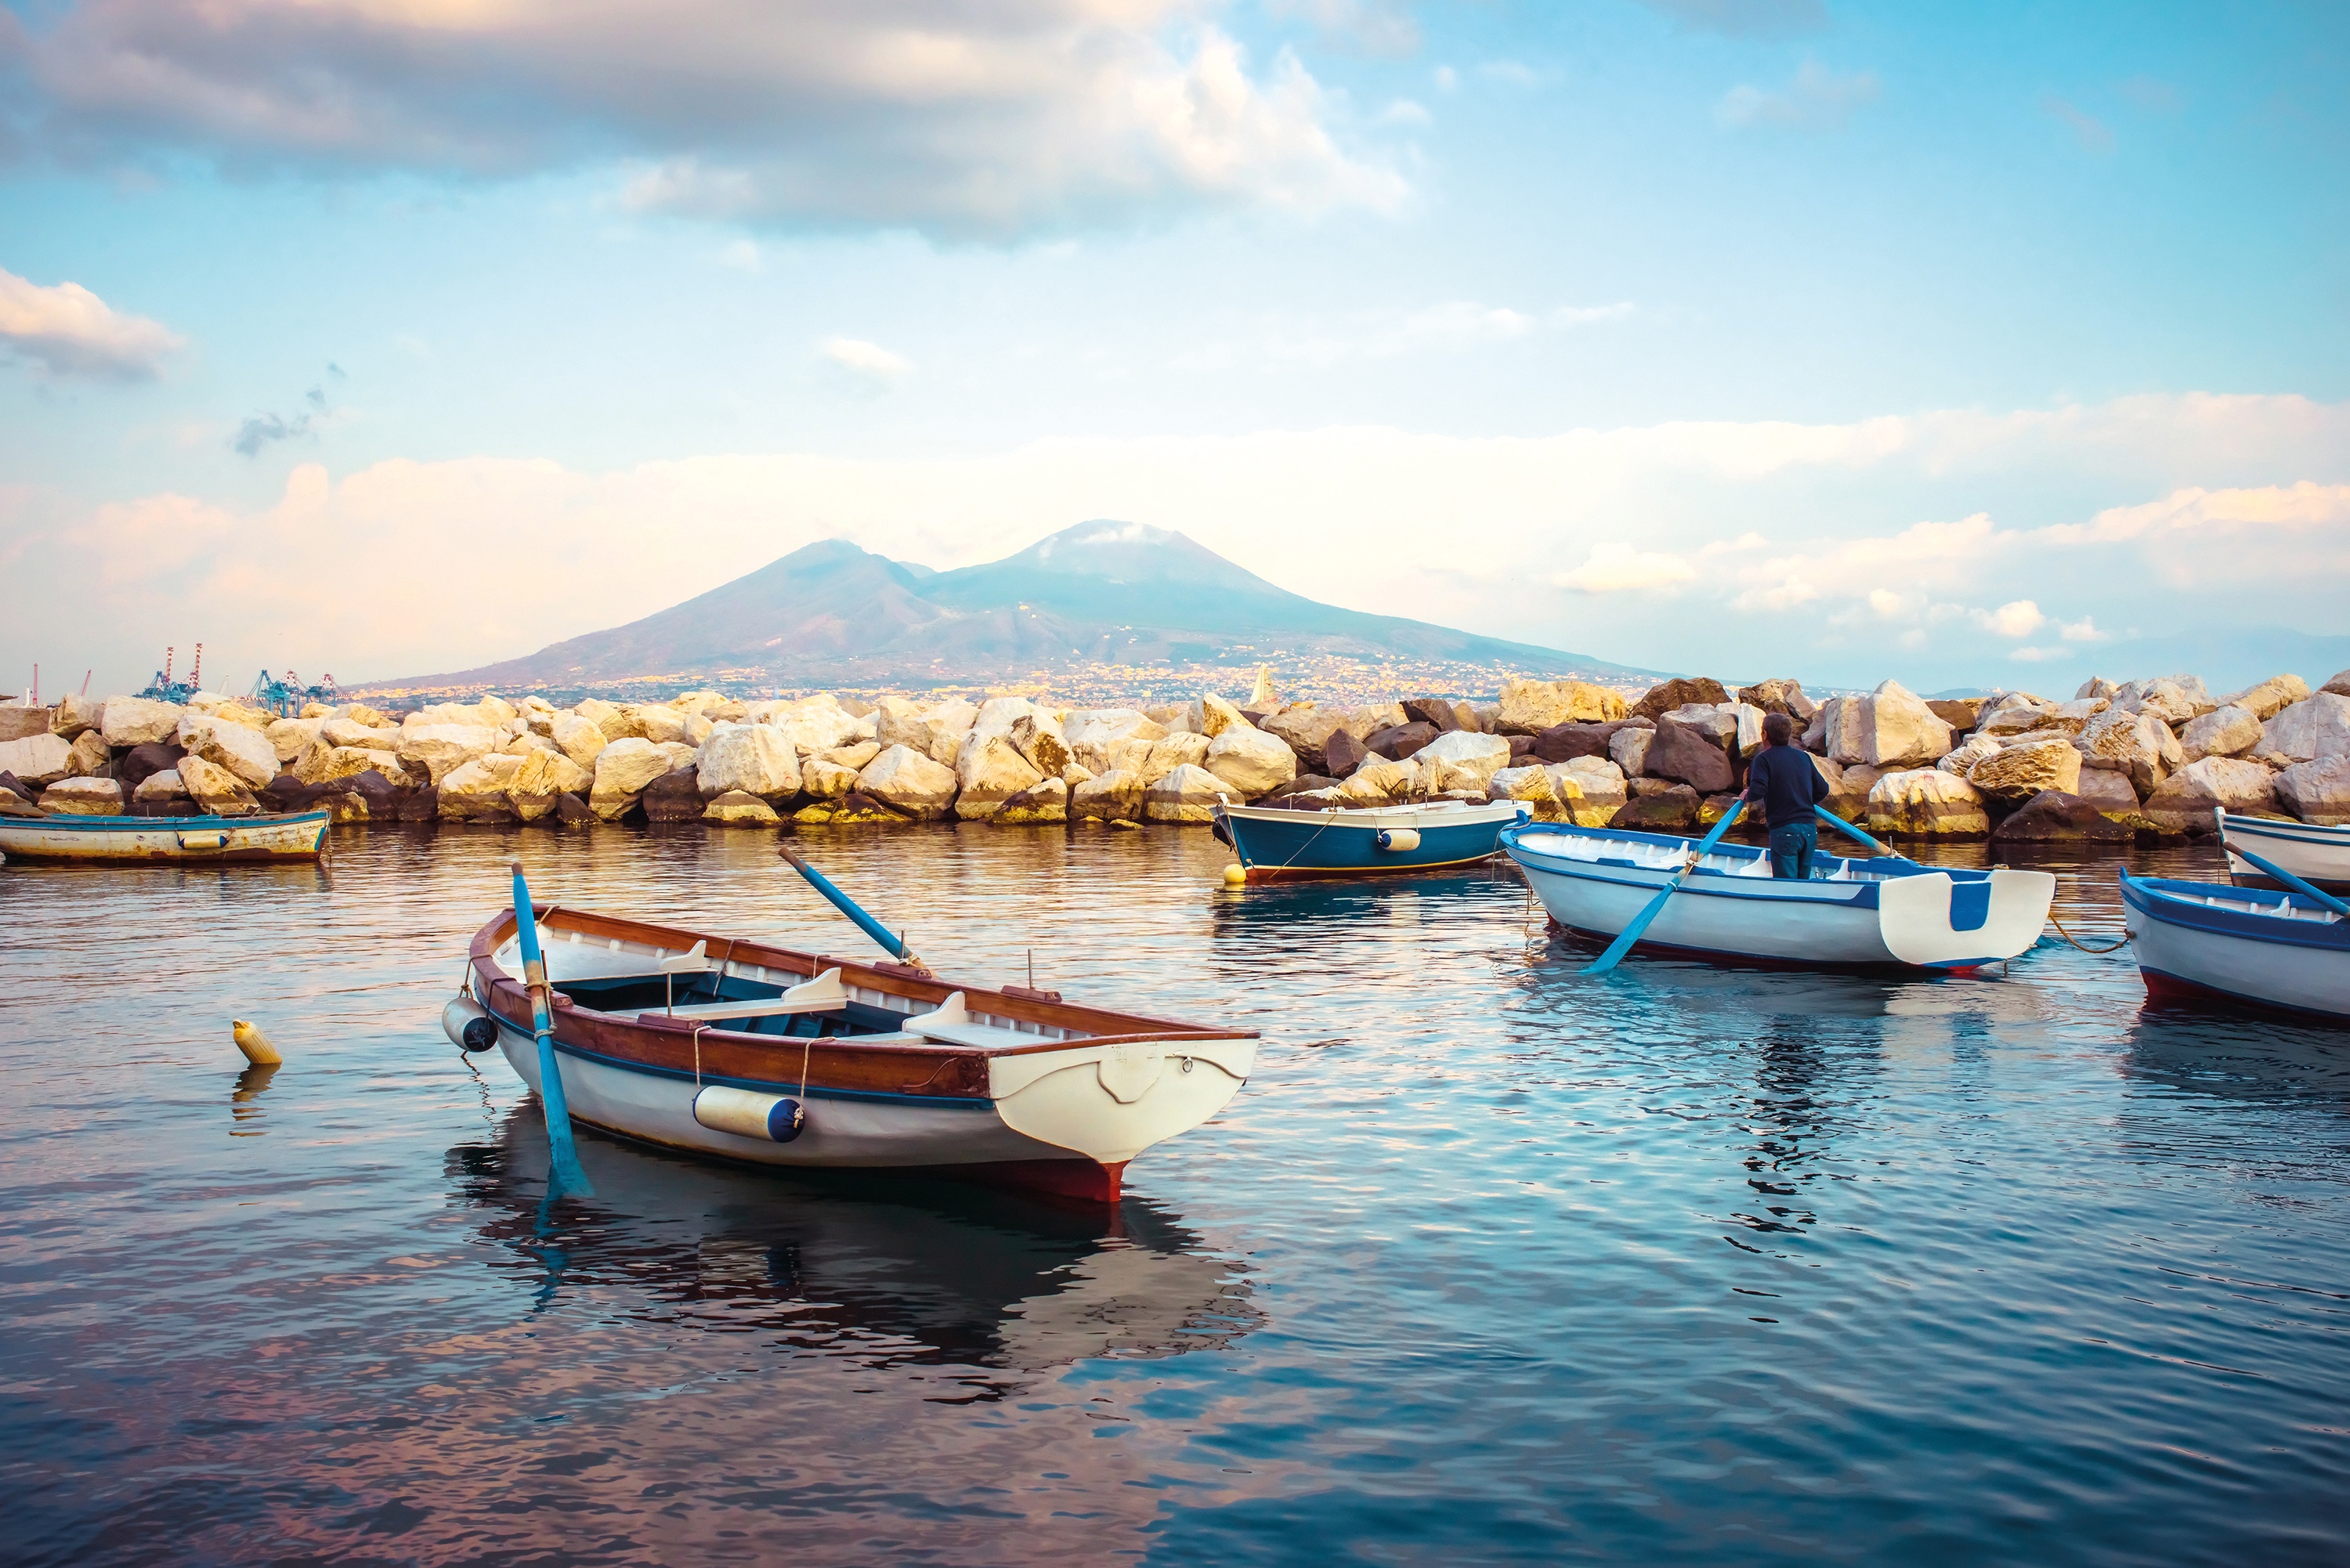 Golf von Neapel & Amalfiküste: Impressionen